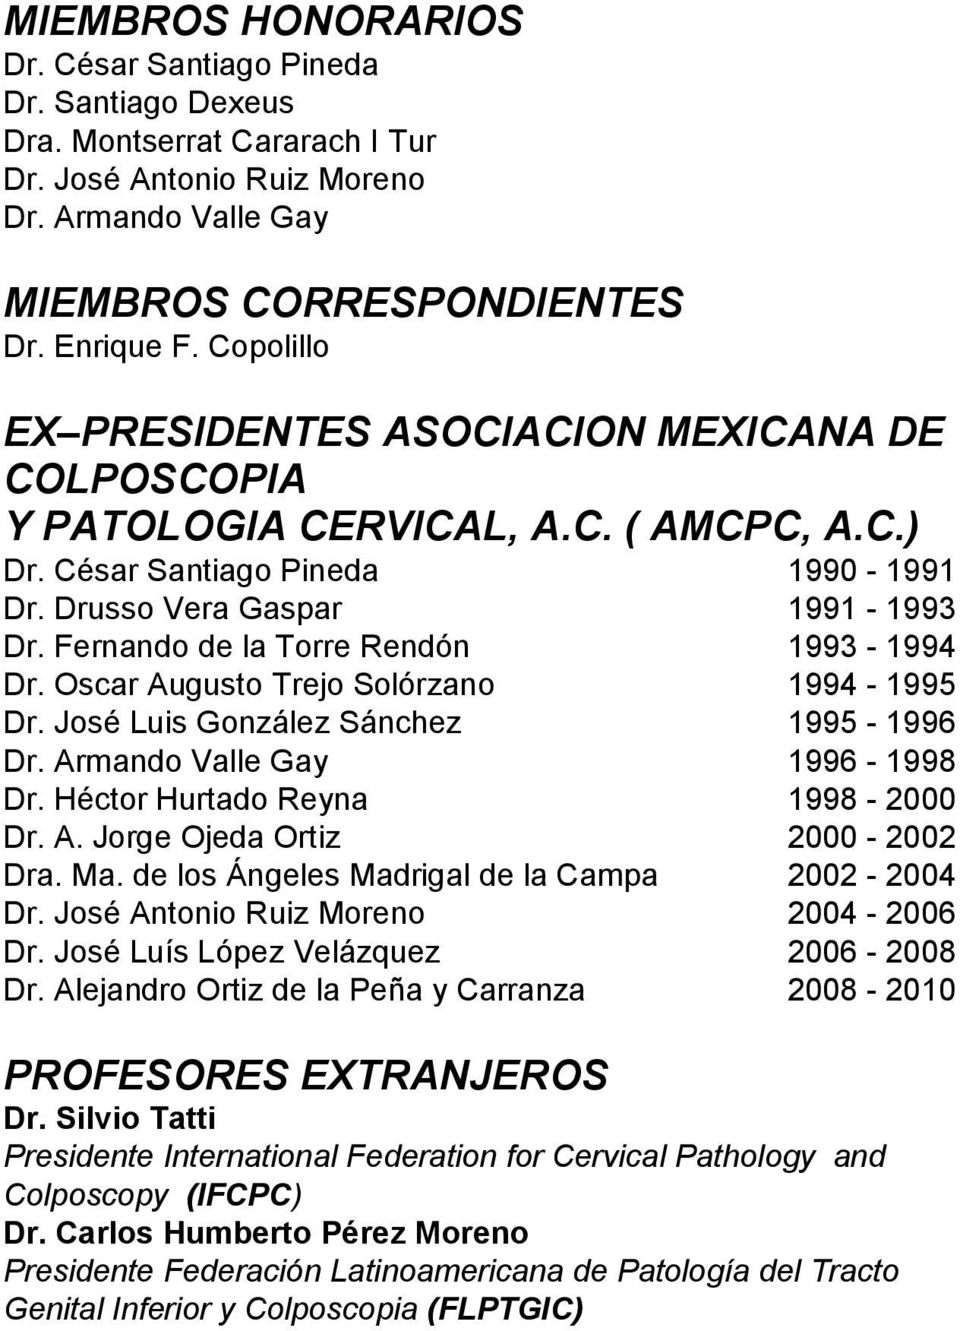 Fernando de la Torre Rendón 1993-1994 Dr. Oscar Augusto Trejo Solórzano 1994-1995 Dr. José Luis González Sánchez 1995-1996 Dr. Armando Valle Gay 1996-1998 Dr. Héctor Hurtado Reyna 1998-2000 Dr. A. Jorge Ojeda Ortiz 2000-2002 Dra.